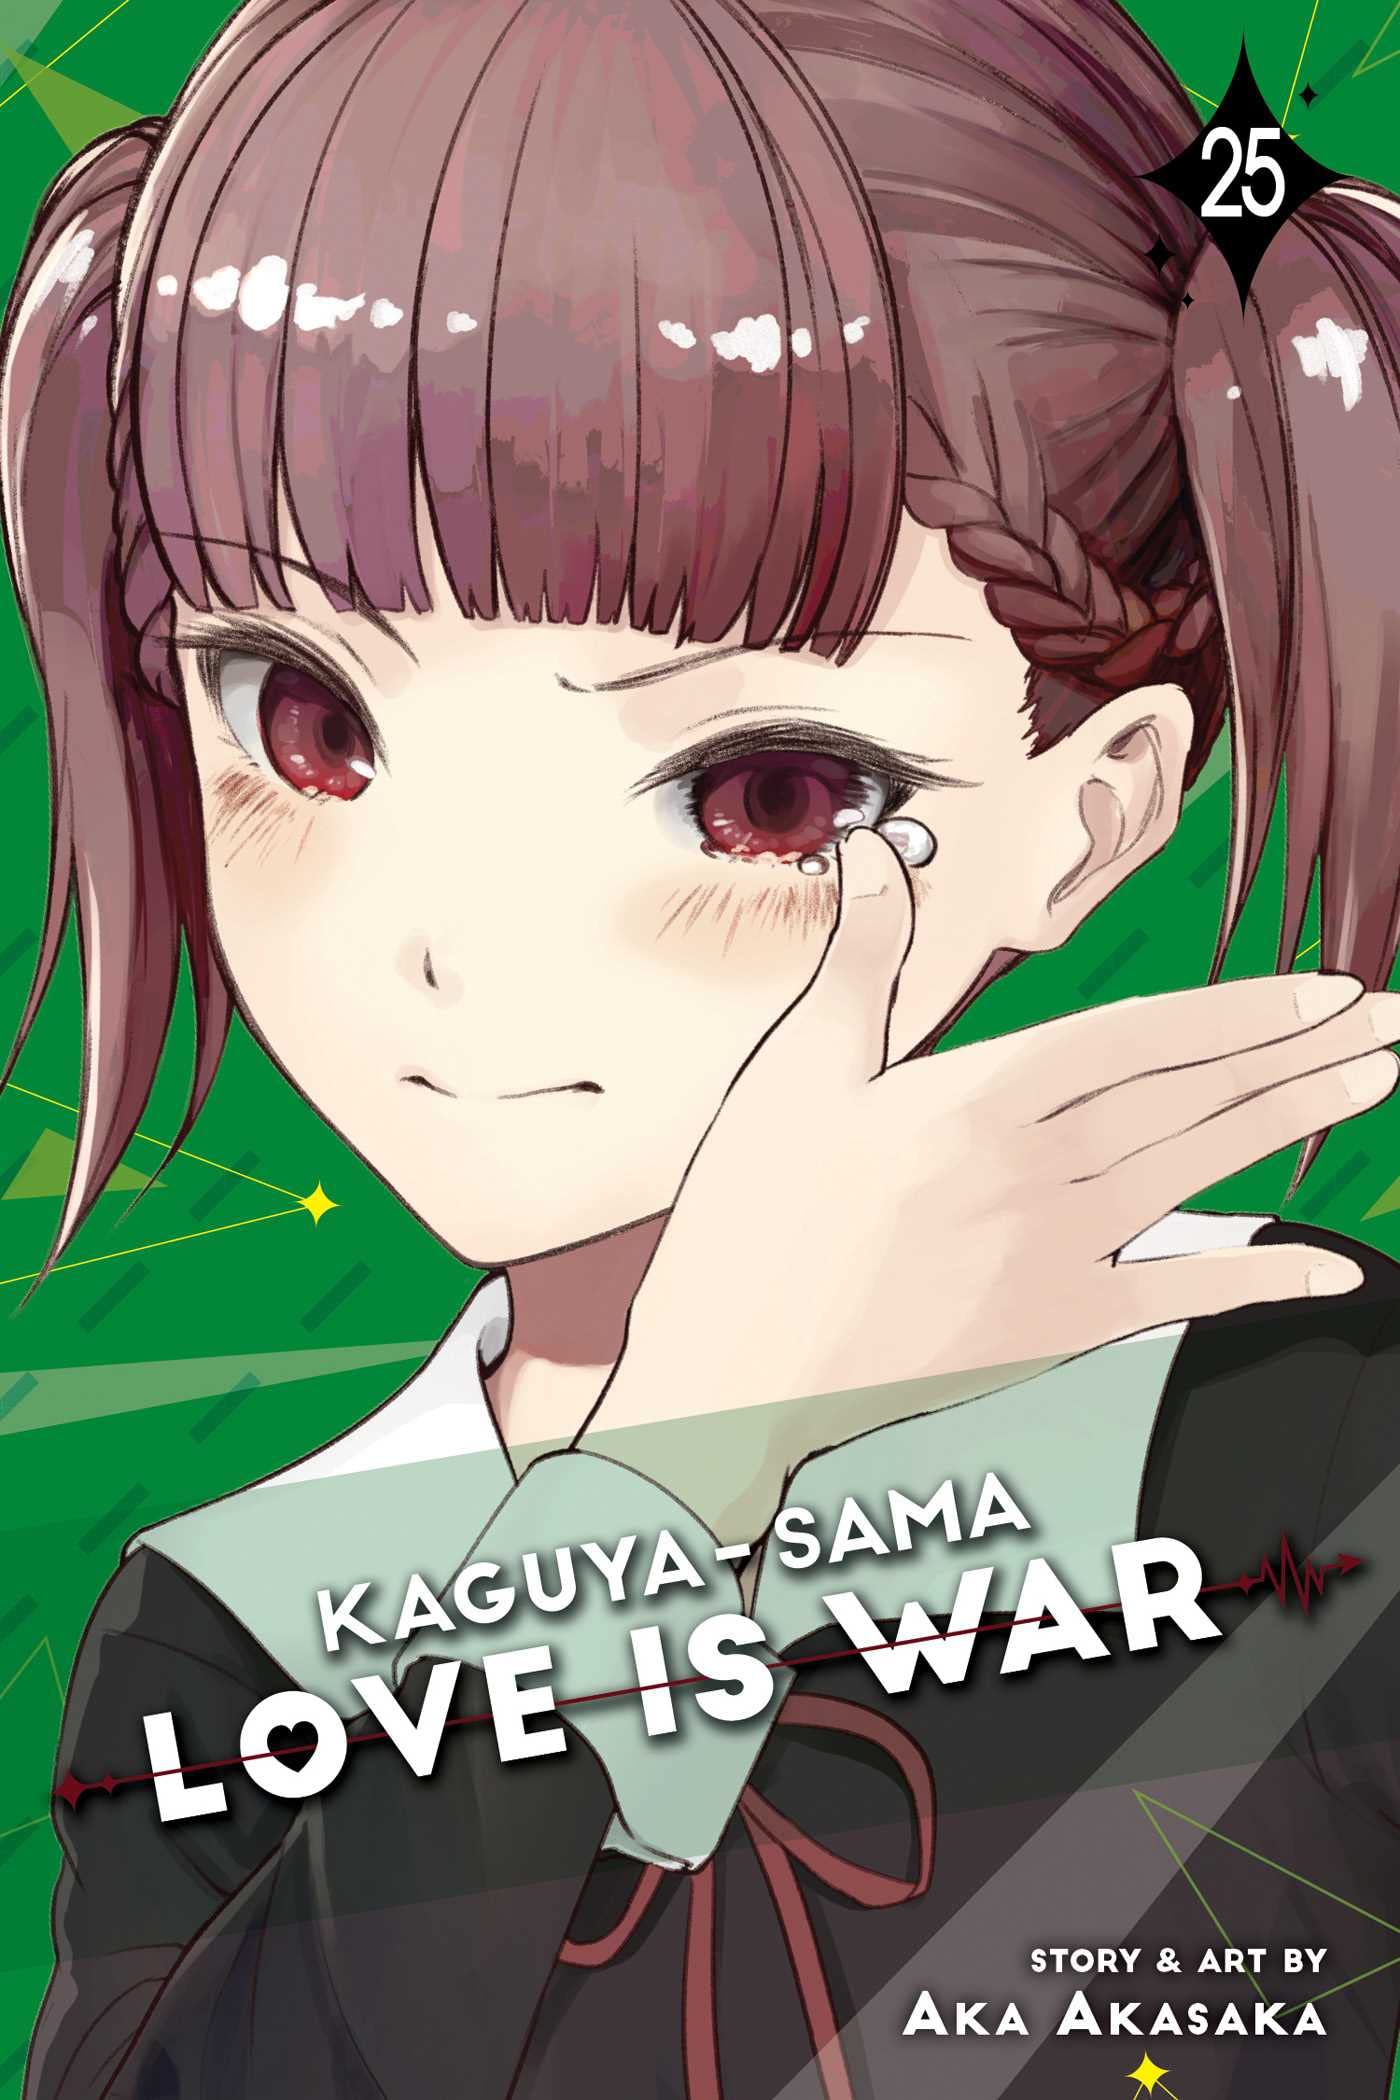 Kaguya-sama: Love Is War Vol. 25